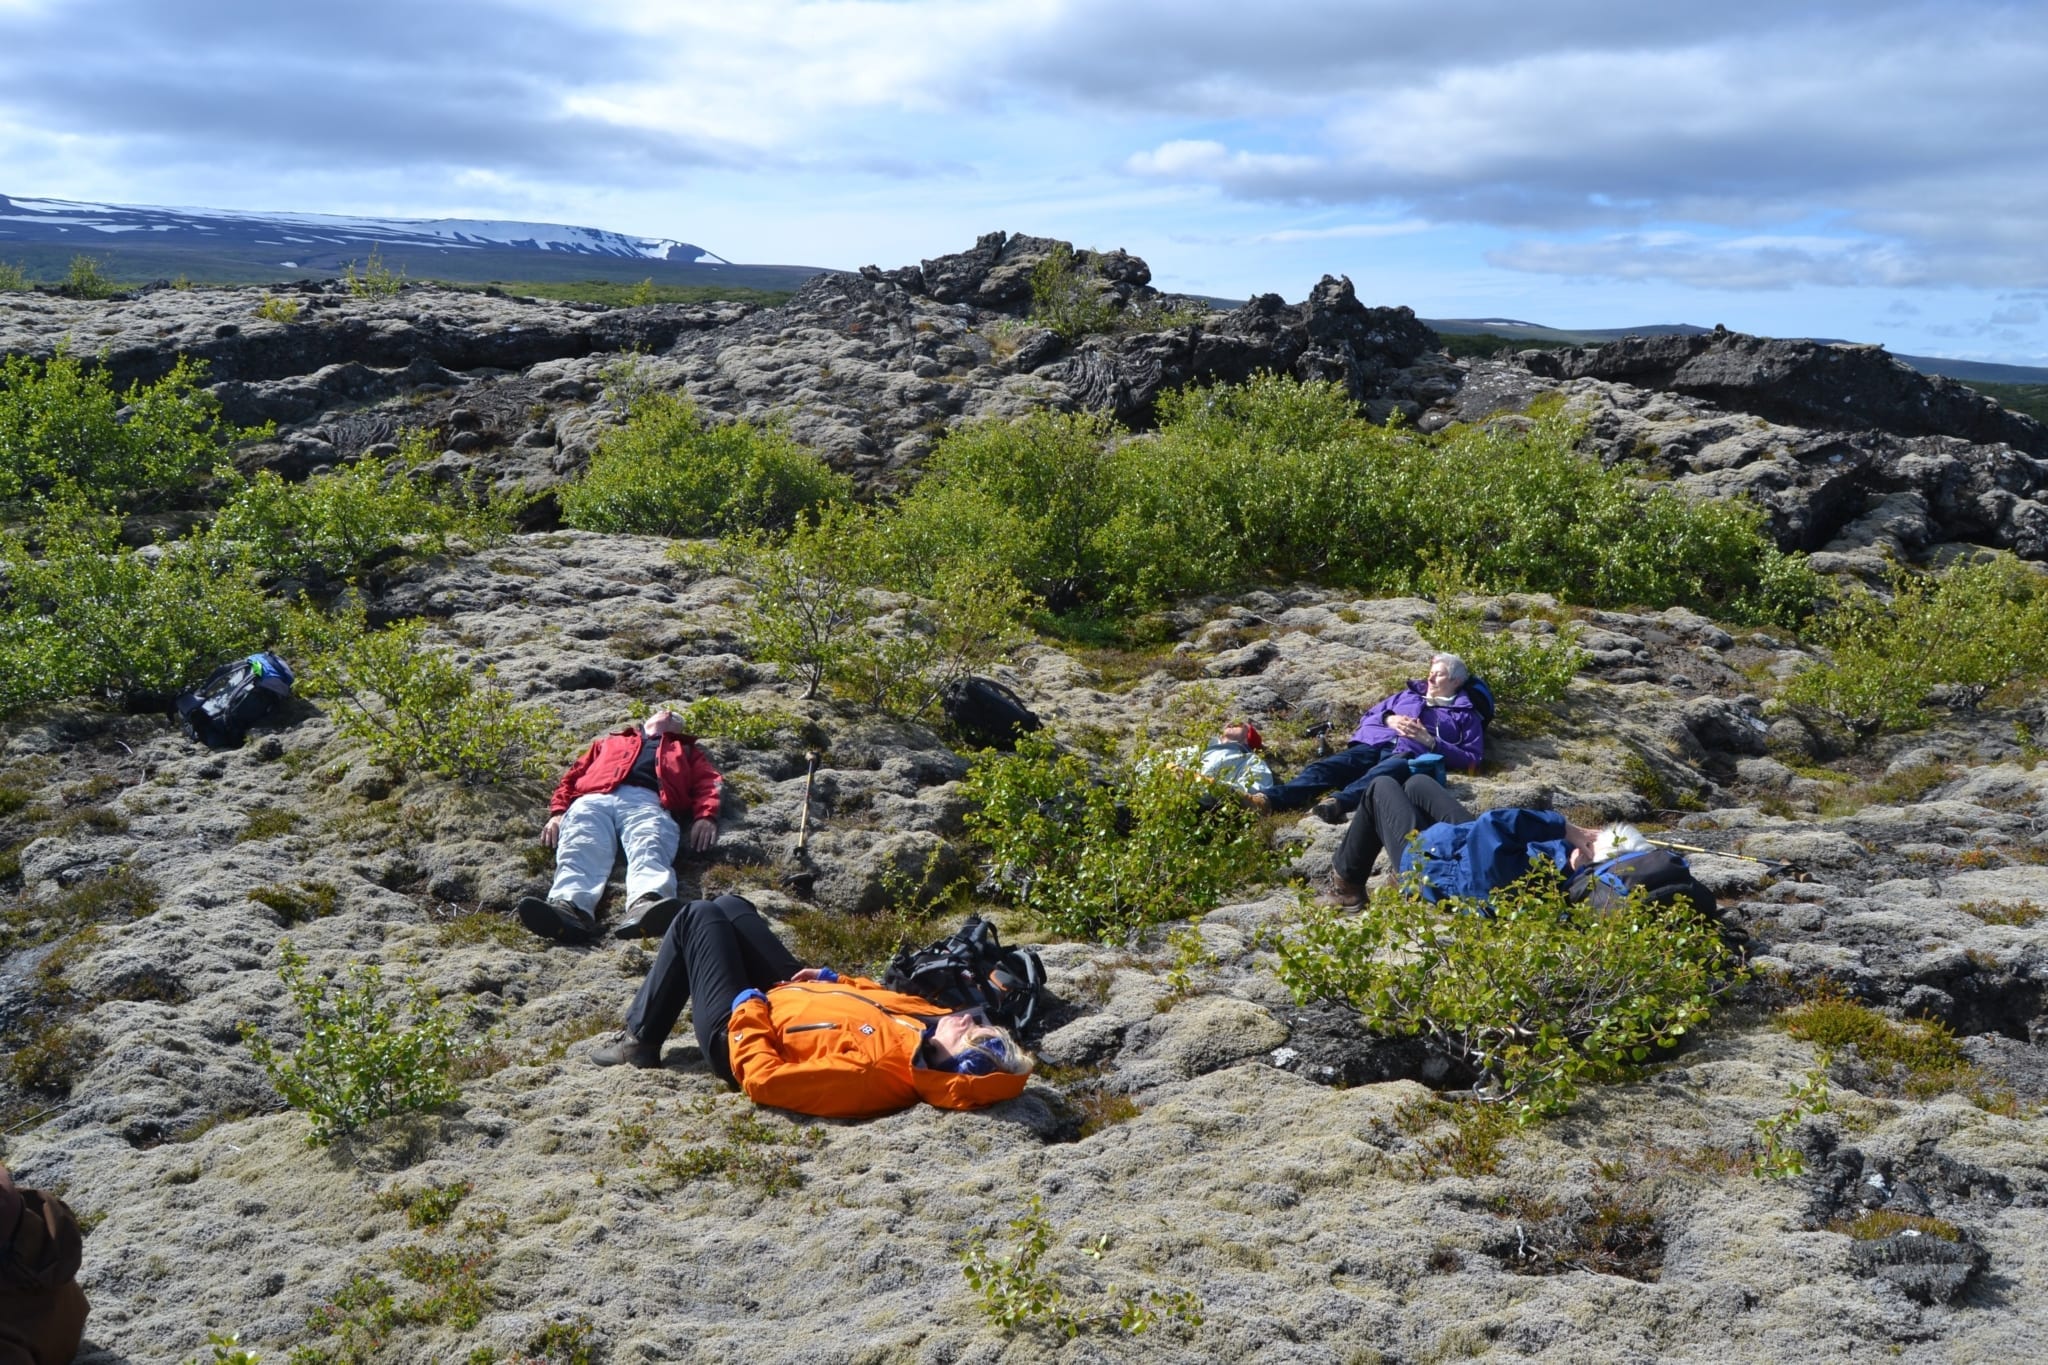 Gemütlich geht es in unseren Gruppenreisen zu. Foto: Hörður Erlingsson